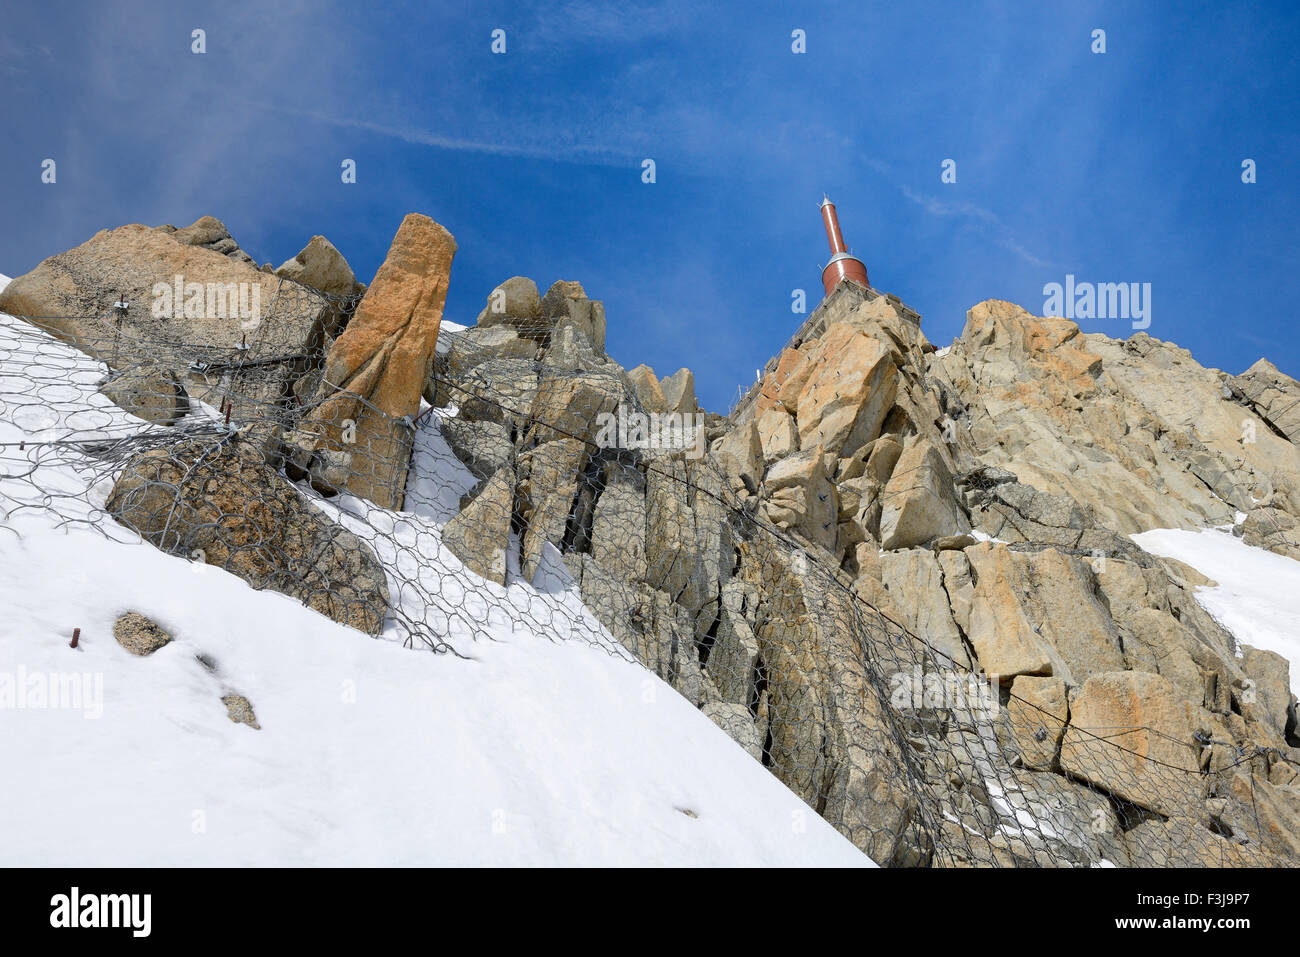 Parte superiore della visualizzazione di piattaforme, Aiguille du Midi, il Massiccio del Monte Bianco, Chamonix, sulle Alpi francesi, Haute Savoie, Francia, Europa Foto Stock